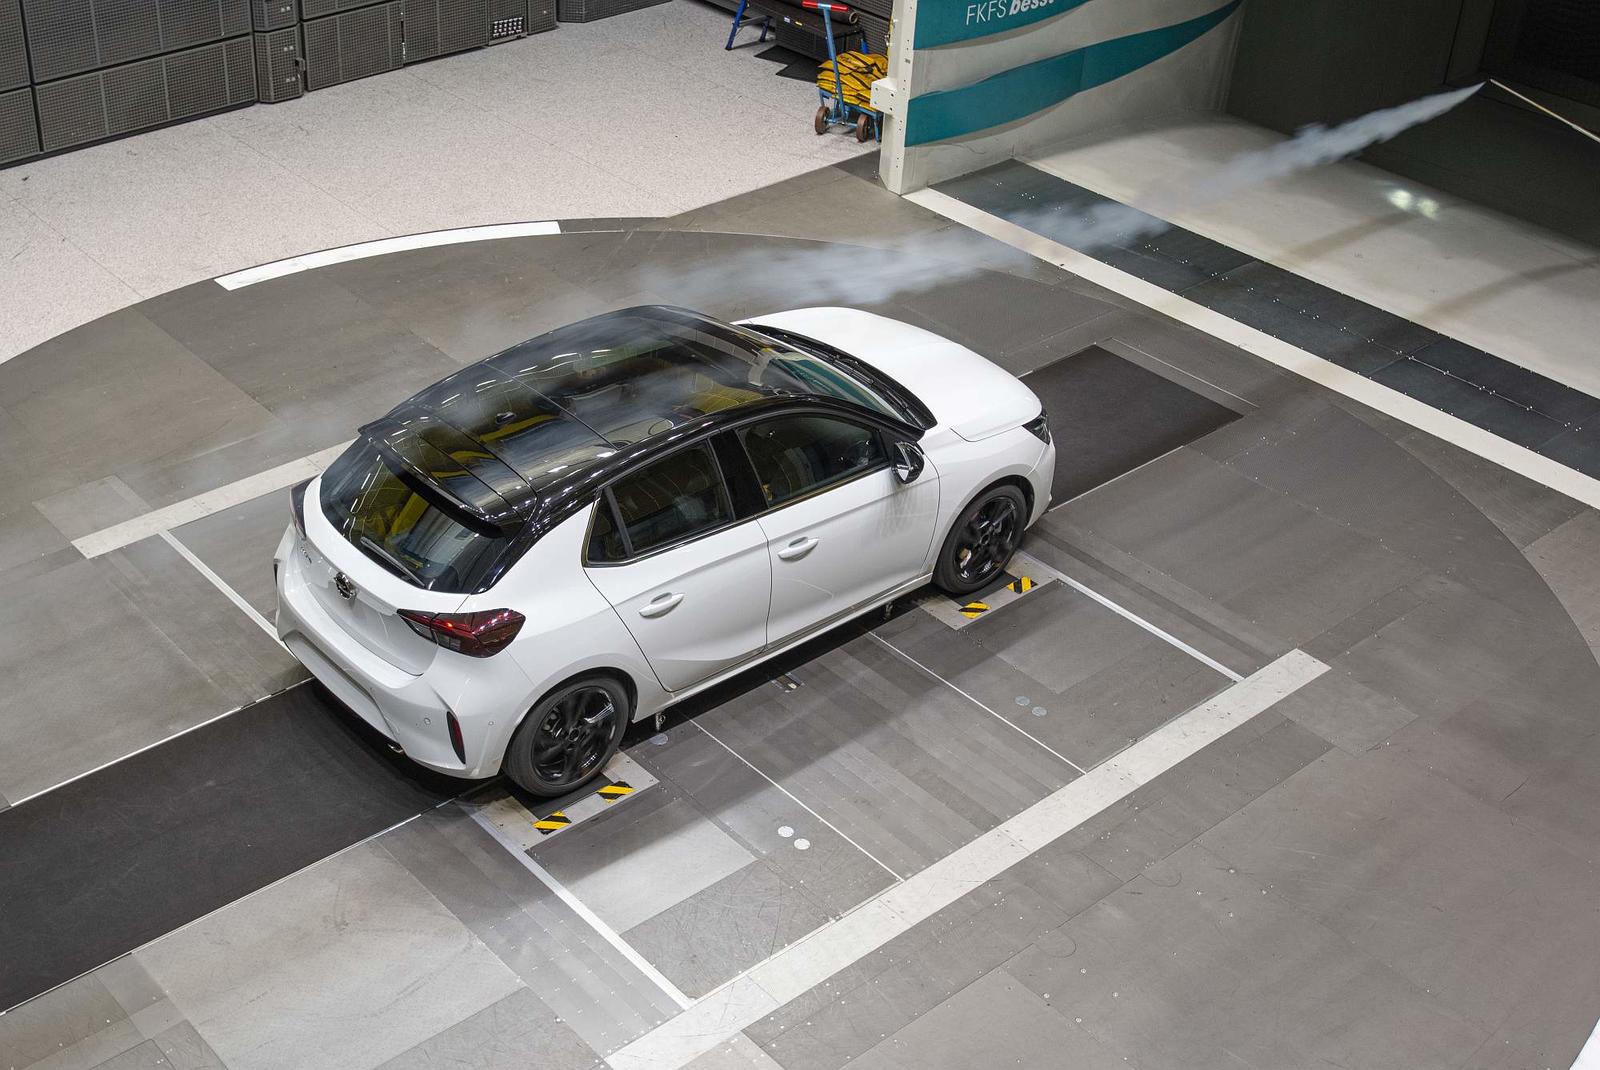 2019 Opel Corsa in Windkanal